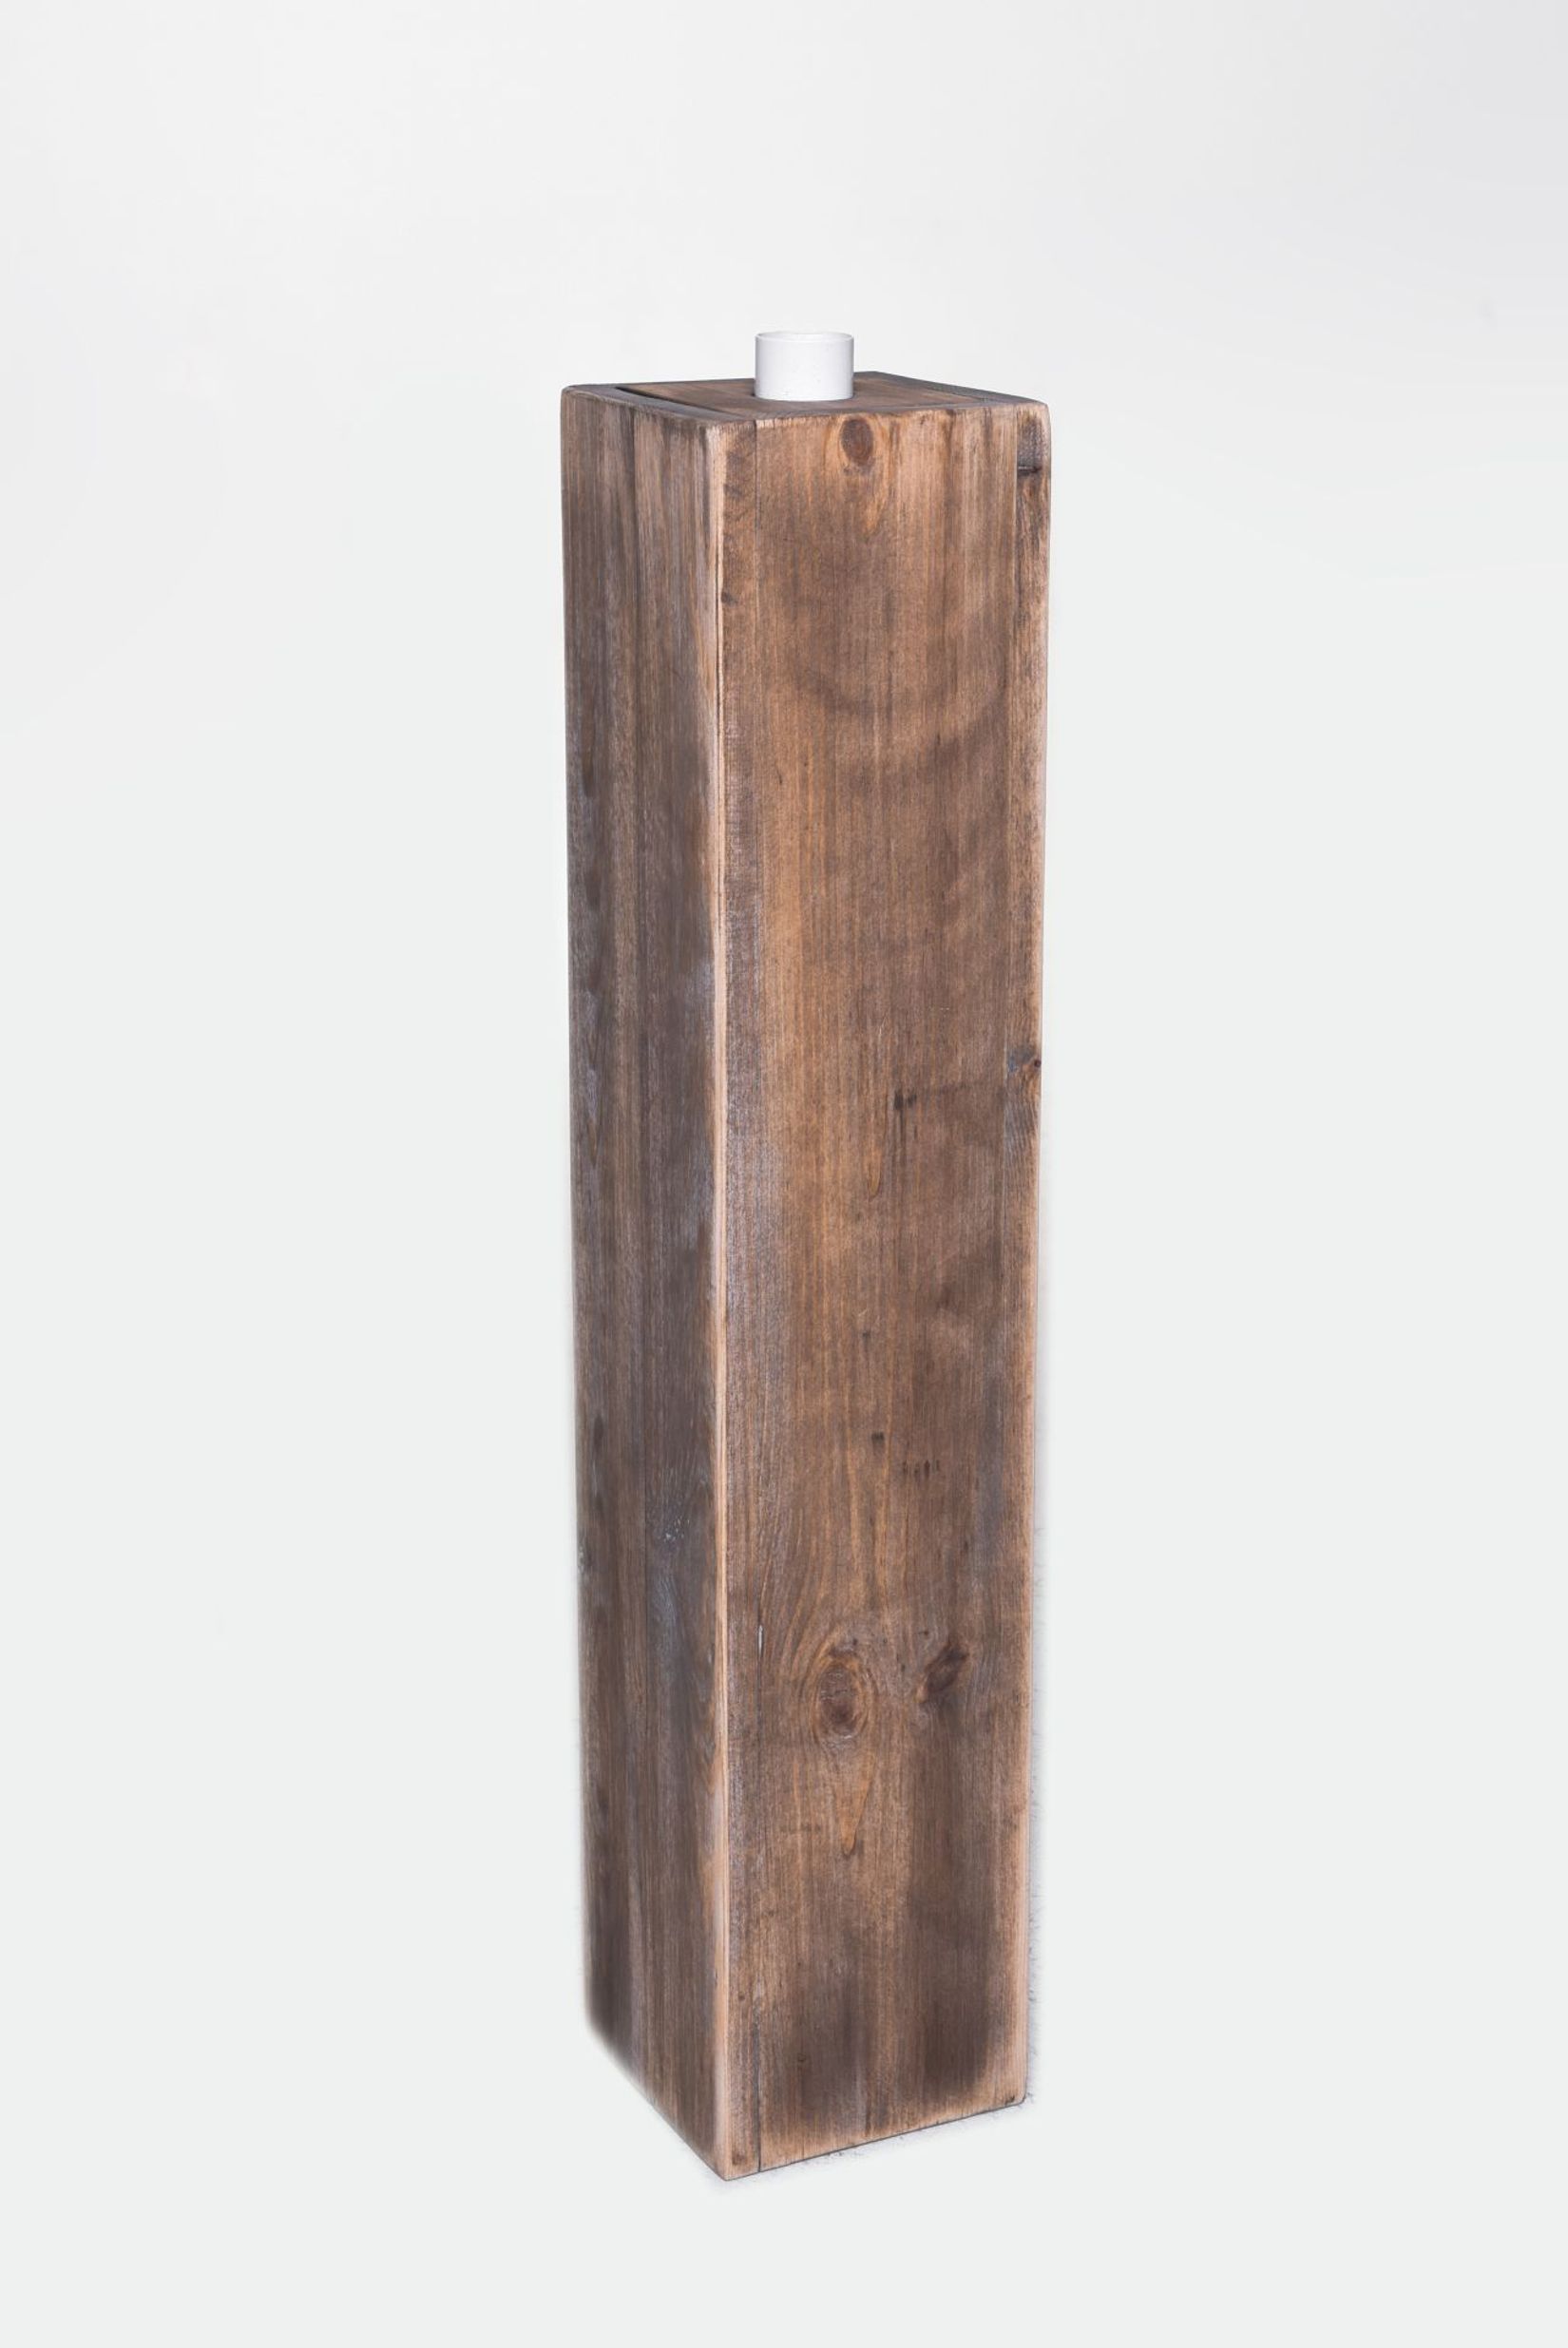 Säule mit Schale Podest Holz Eisen braun AURORA weiß